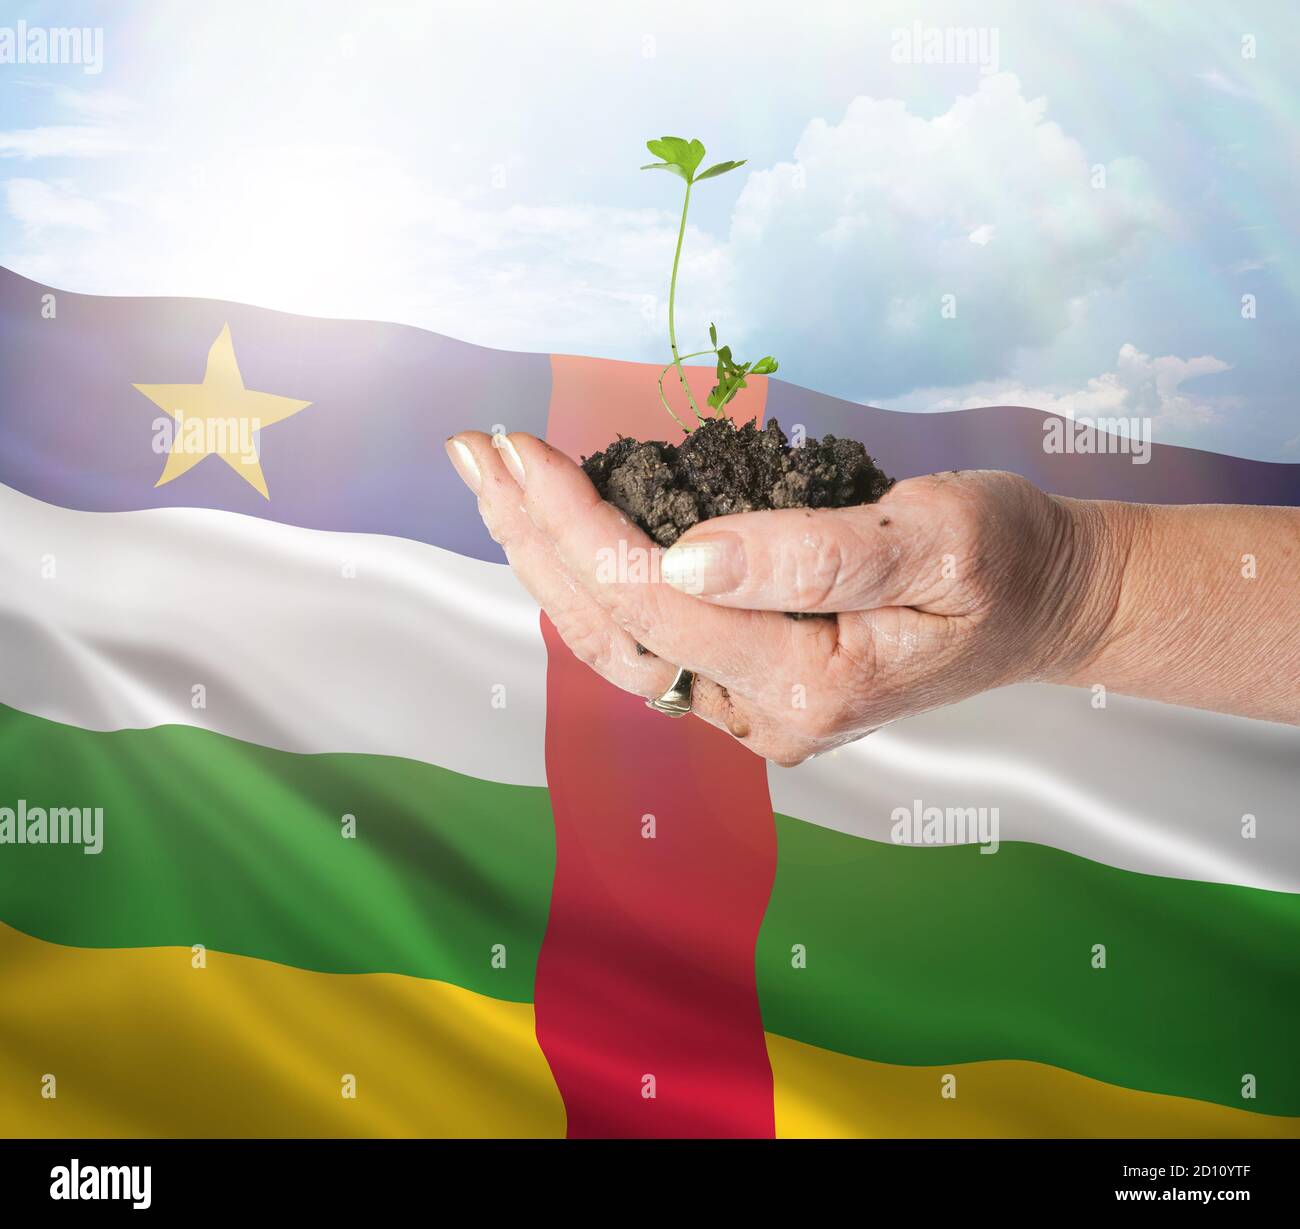 República Centroafricana crecimiento y nuevo comienzo. Concepto de energía renovable verde y ecología. Mano sosteniendo planta joven. Foto de stock